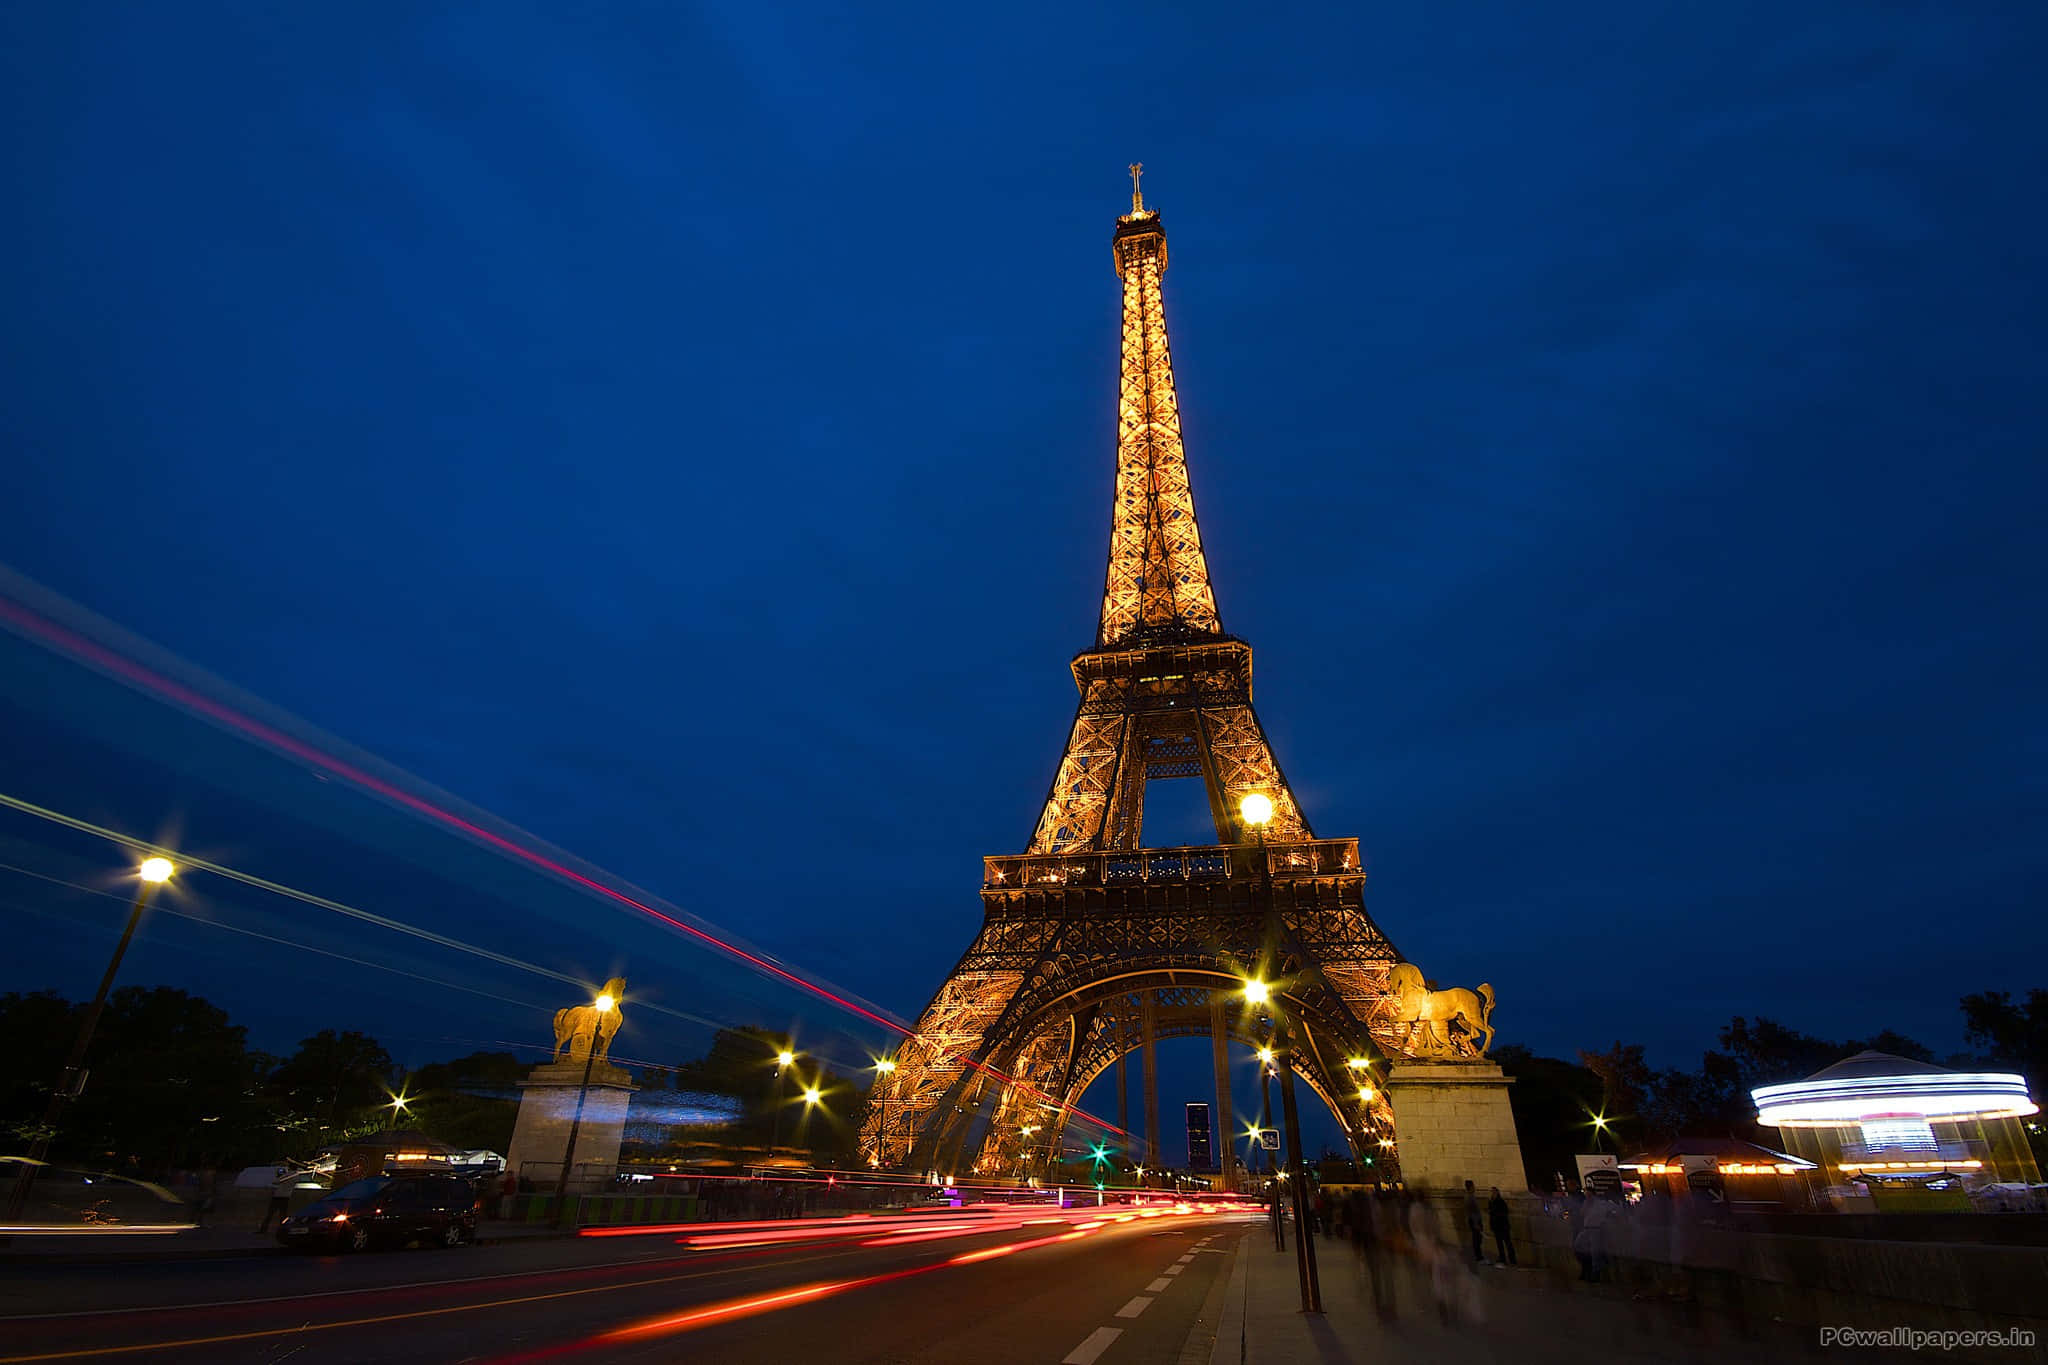 Besökerdu Paris? Gå Och Se Eiffeltornet På Natten!